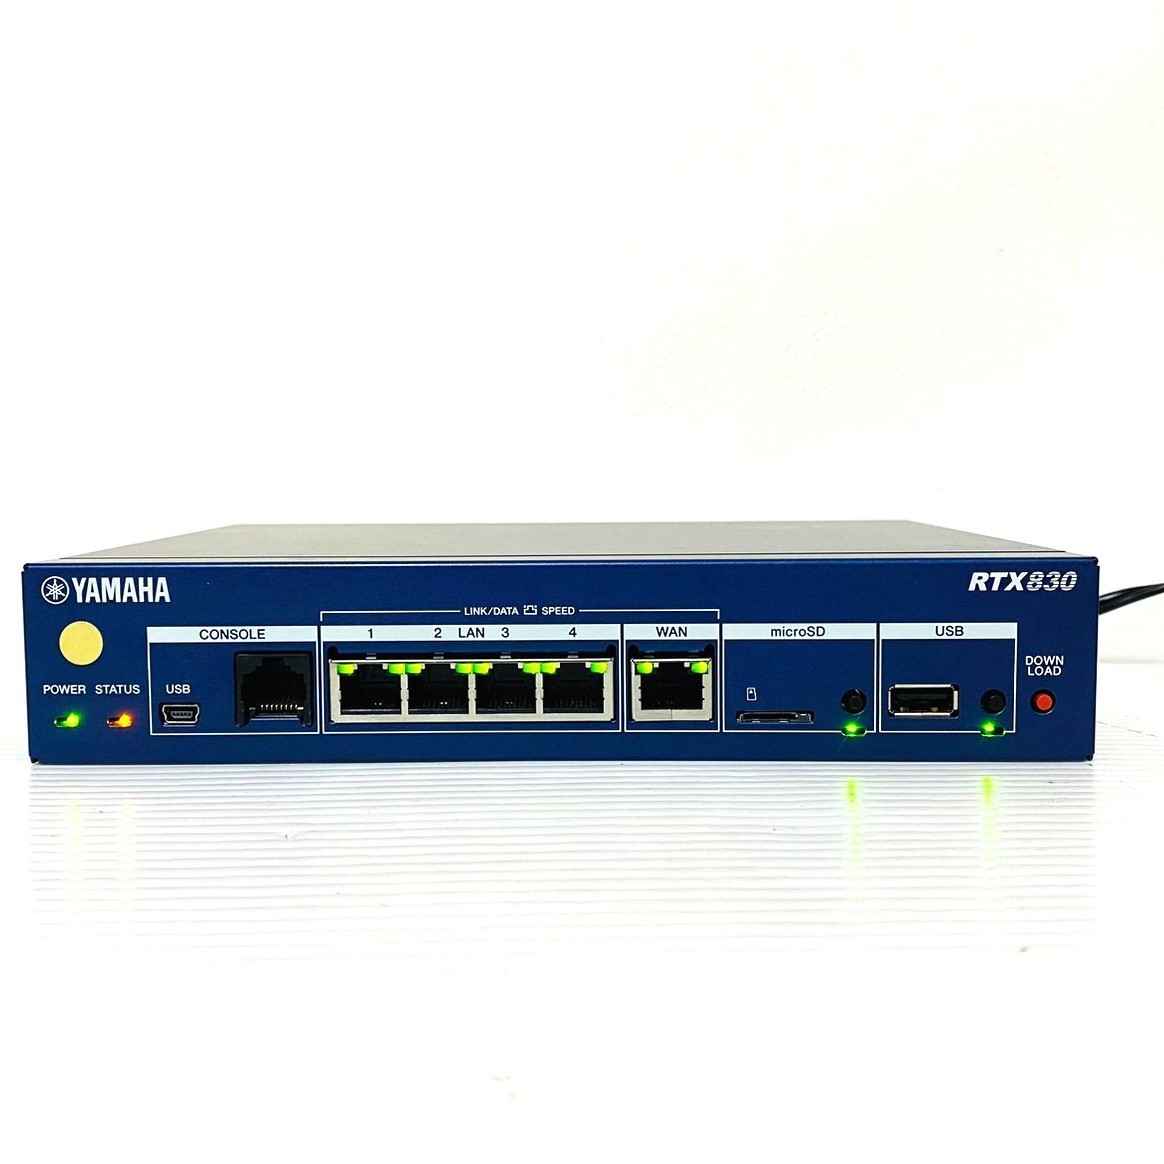 874【通電OK】YAMAHA RTX830 ギガアクセス VPN ルーター 小規模拠点向け マルチポイントトンネル LANマップ ネットワーク 通信 機器 ヤマハ_画像1